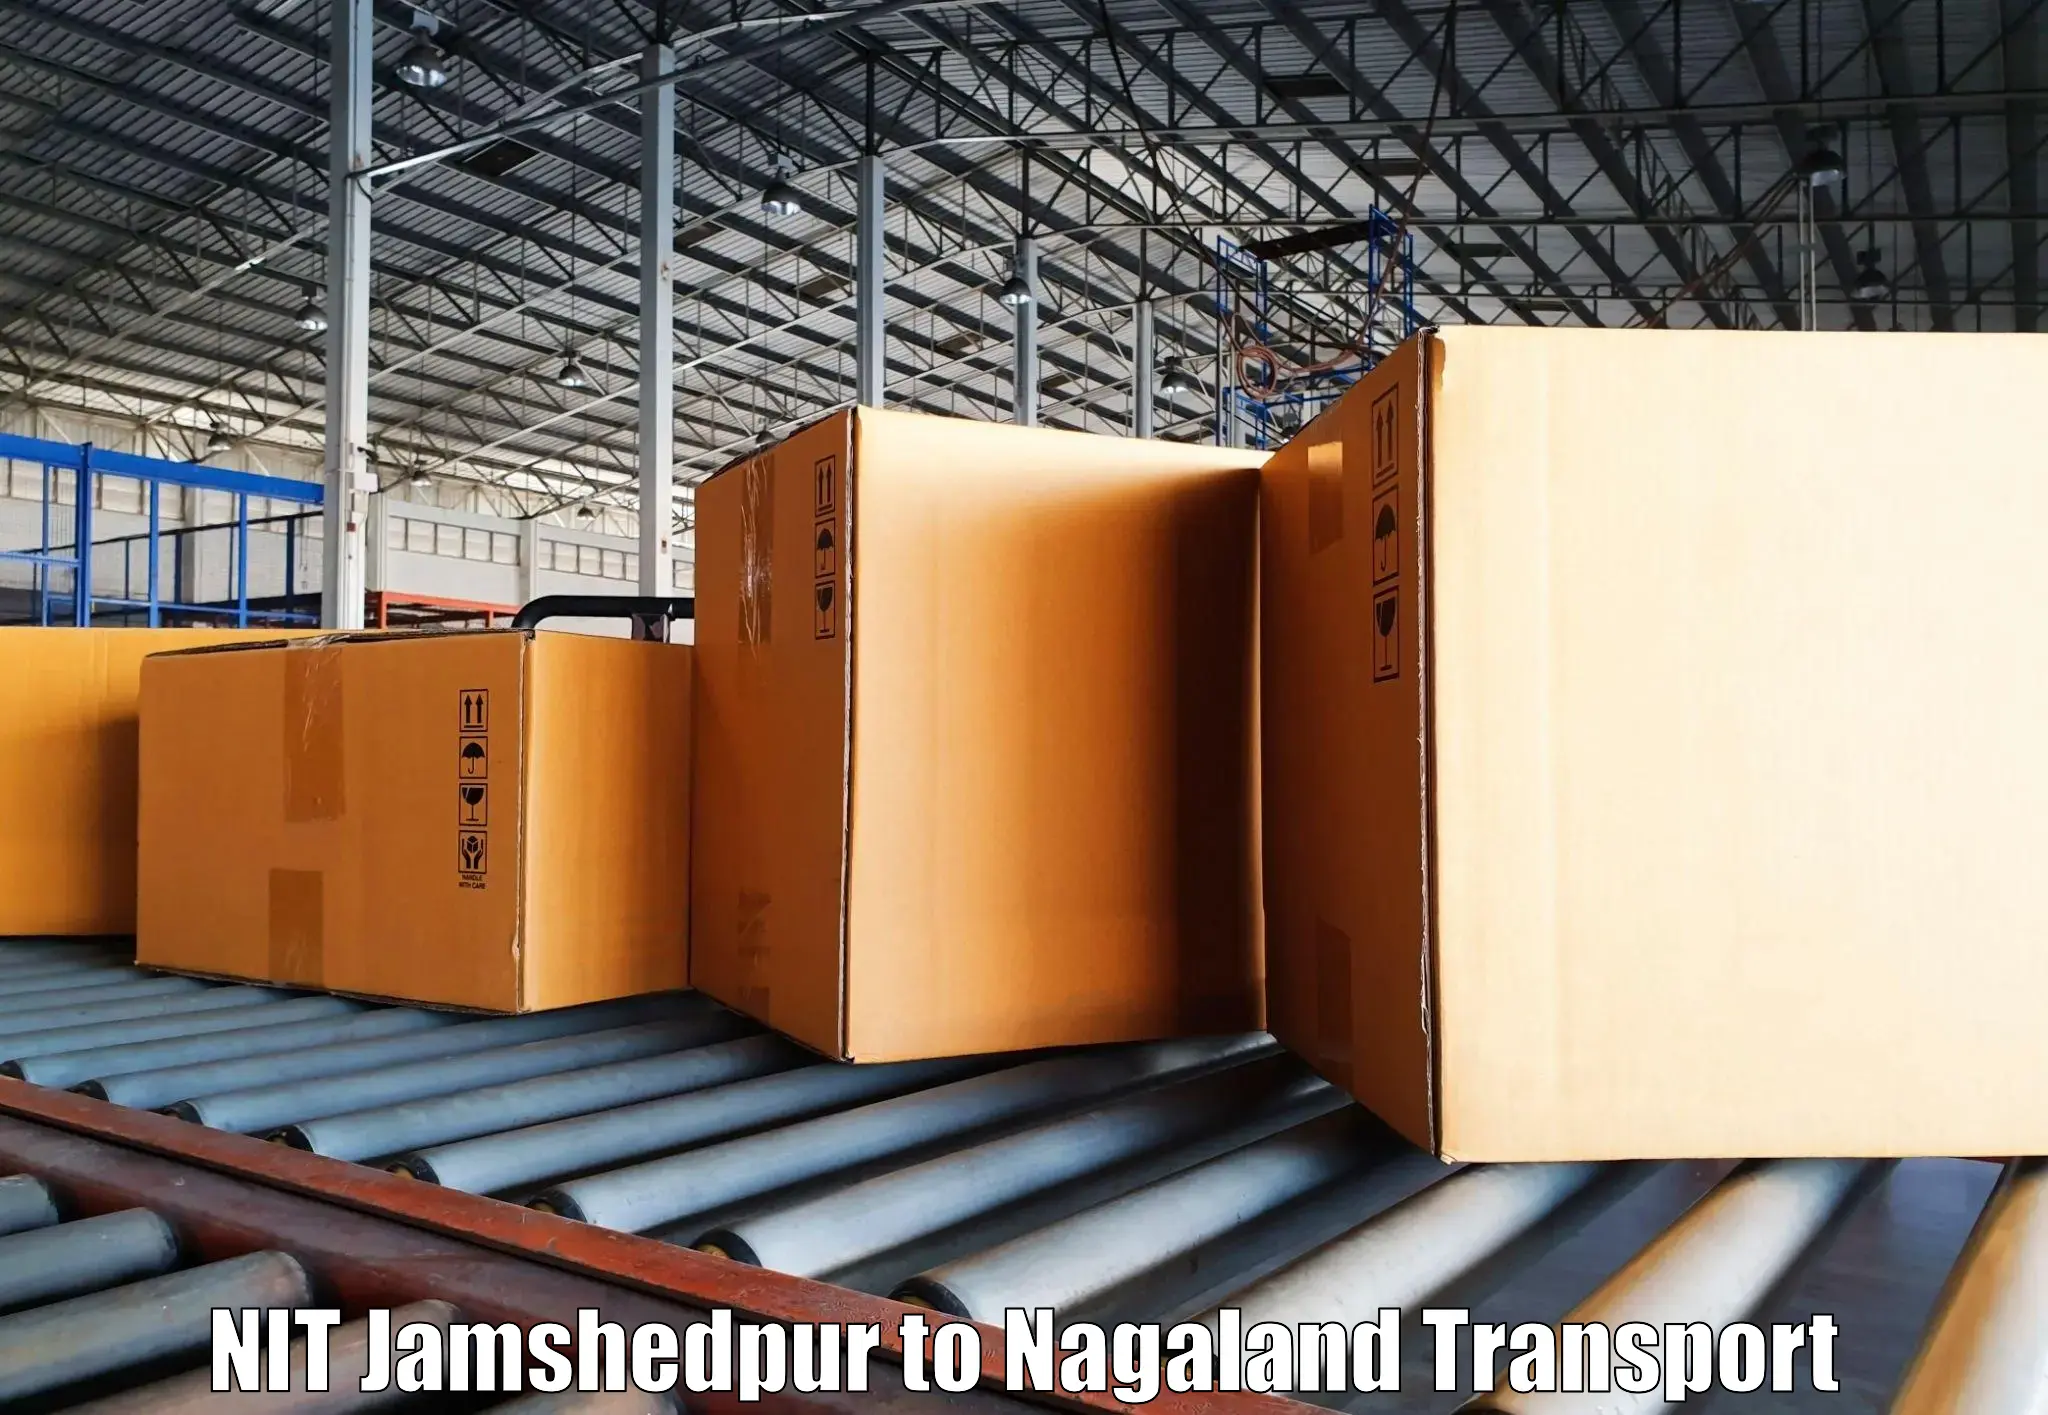 Door to door transport services in NIT Jamshedpur to Nagaland